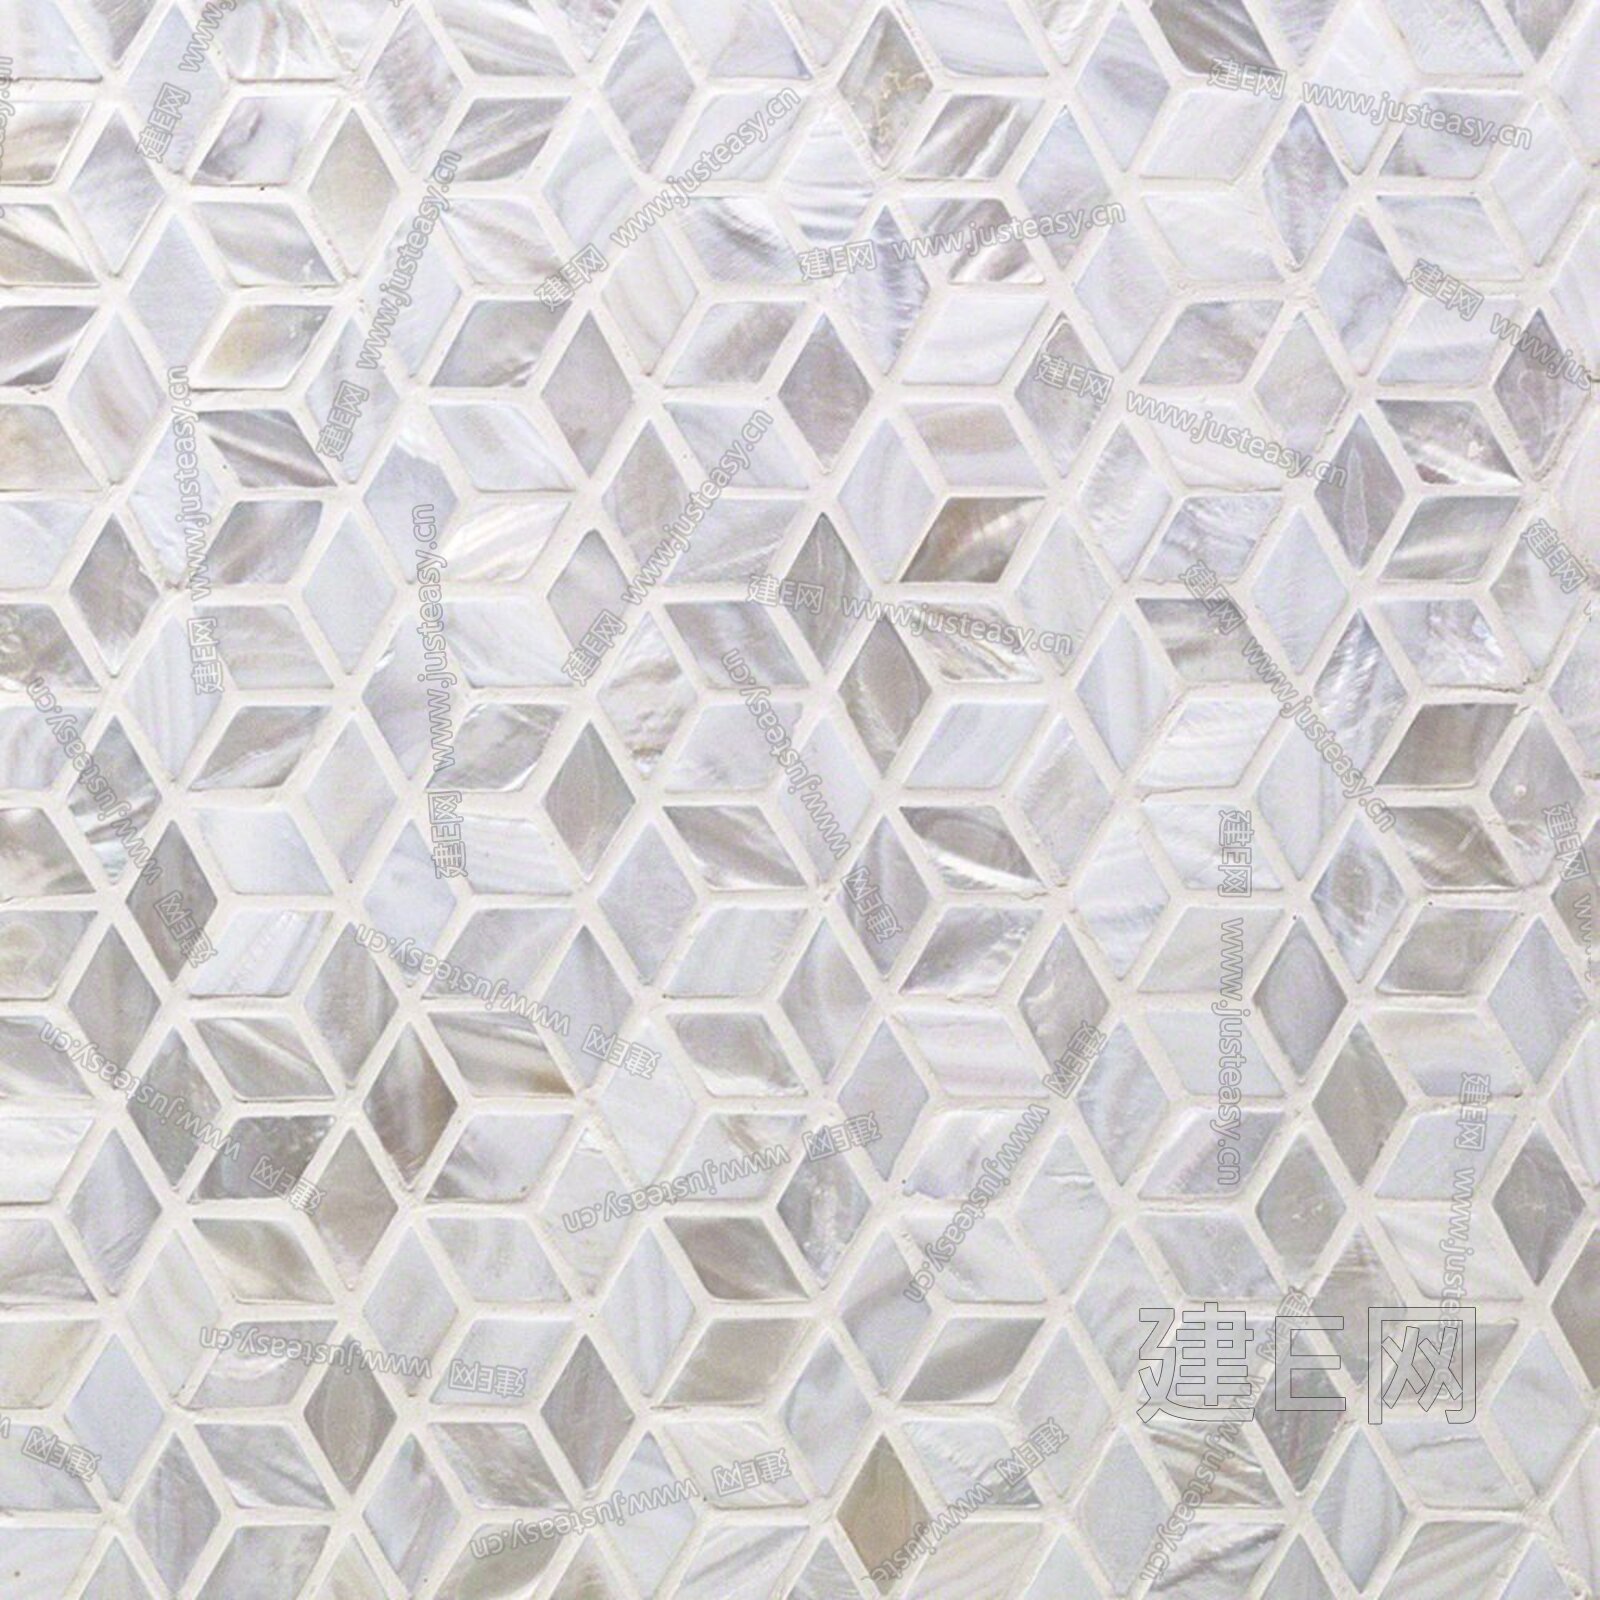 贝壳马赛克厂家 正方形网拼淡水贝 自然色贝壳 贝壳工艺品-阿里巴巴